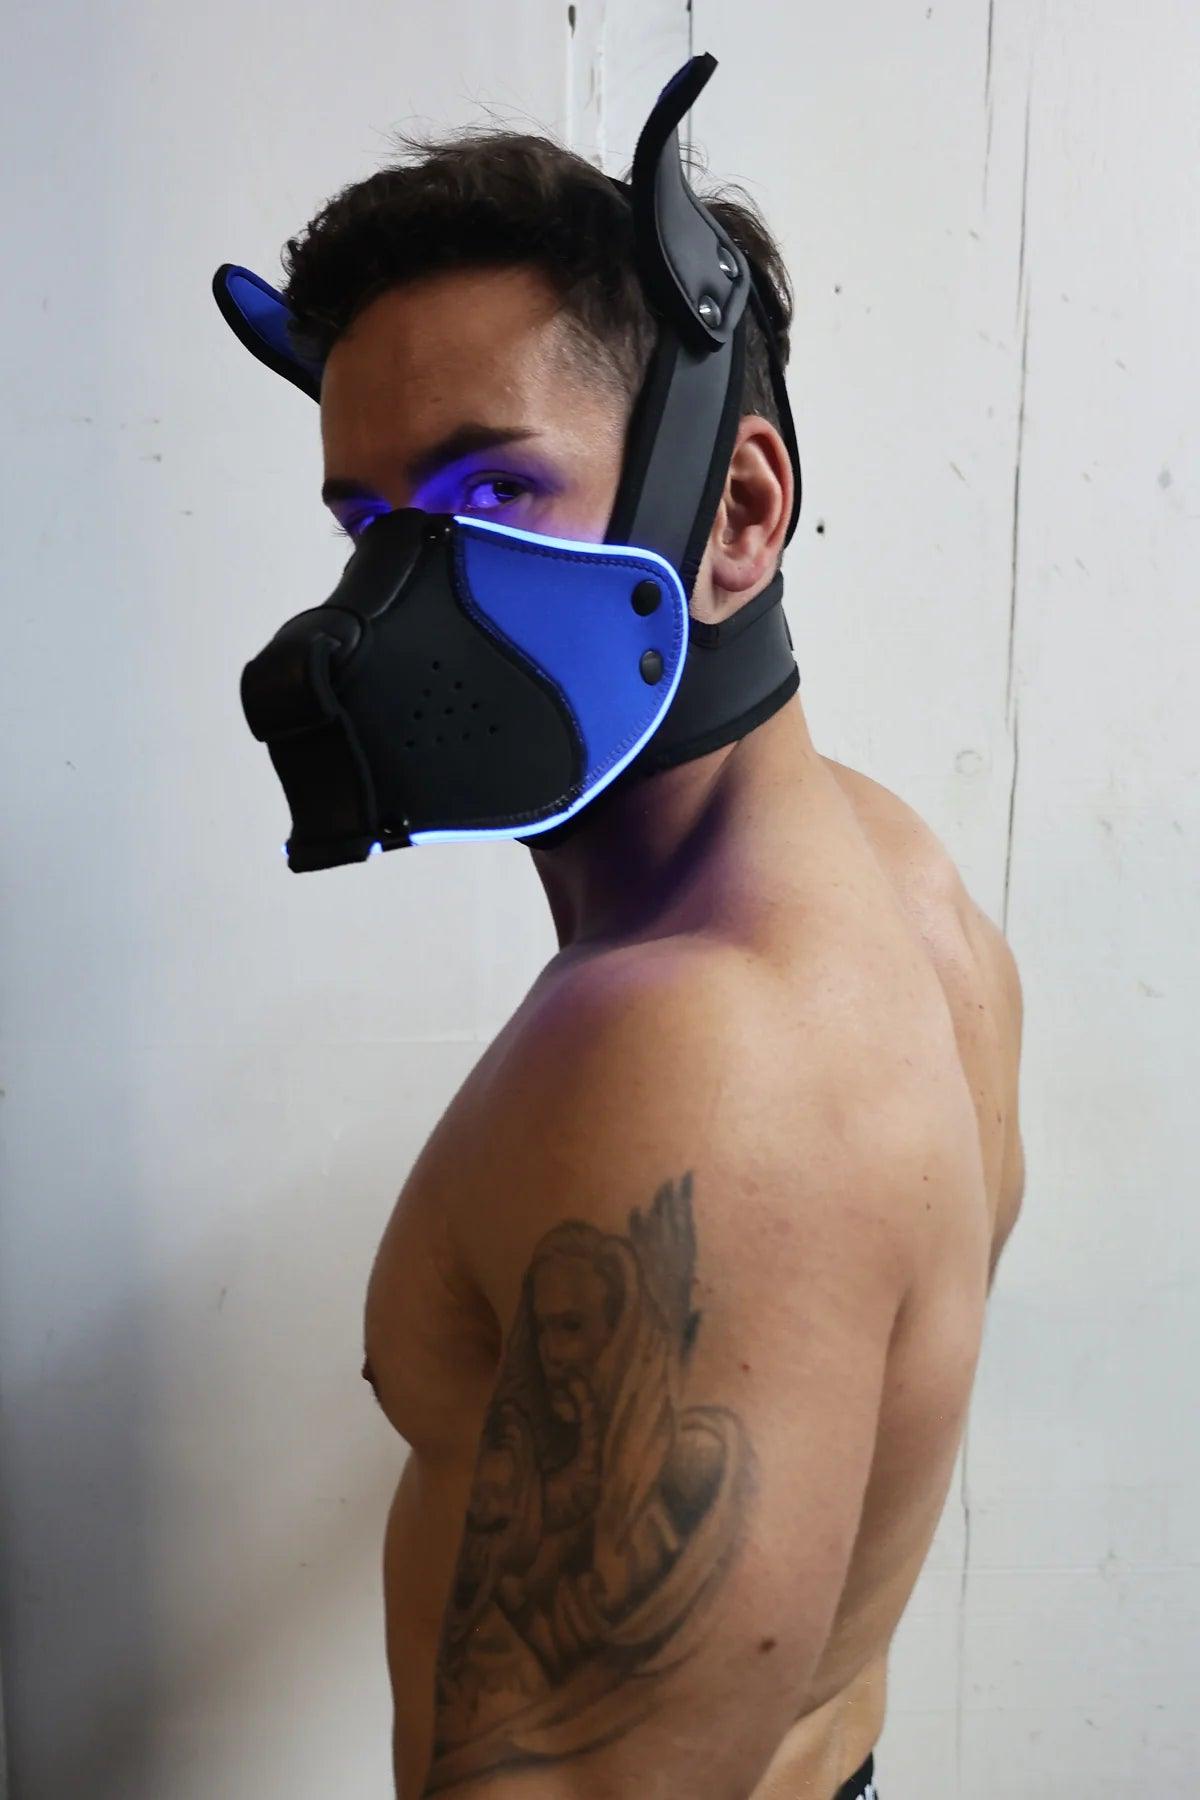 Poundtown Pup Mask 2.0 BLUE - Take A Peek